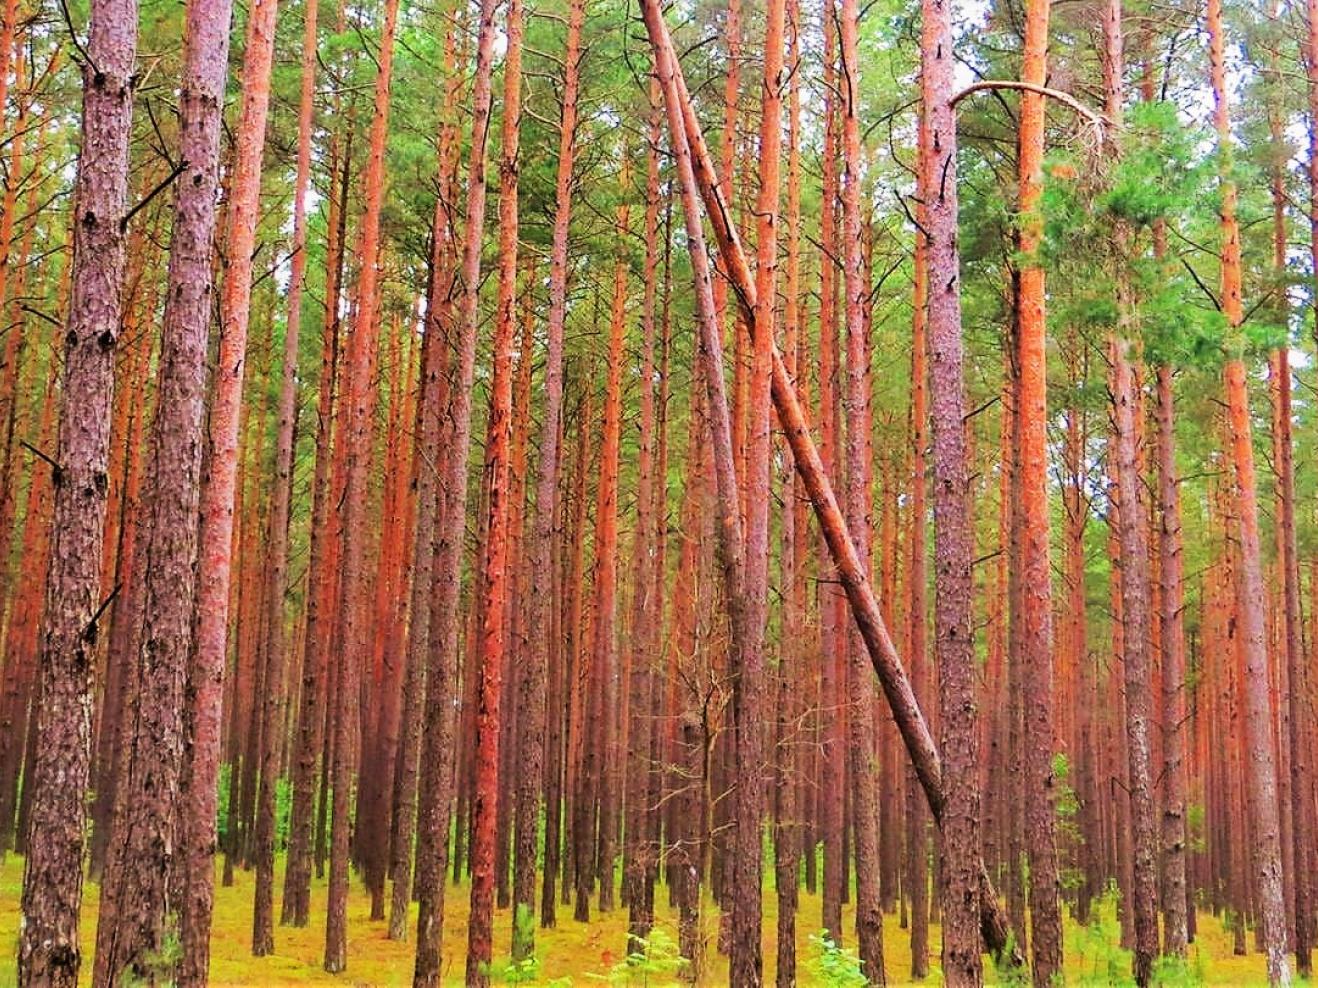 Blick in einen Kiefernwald, Bäume stehen dicht an dicht.